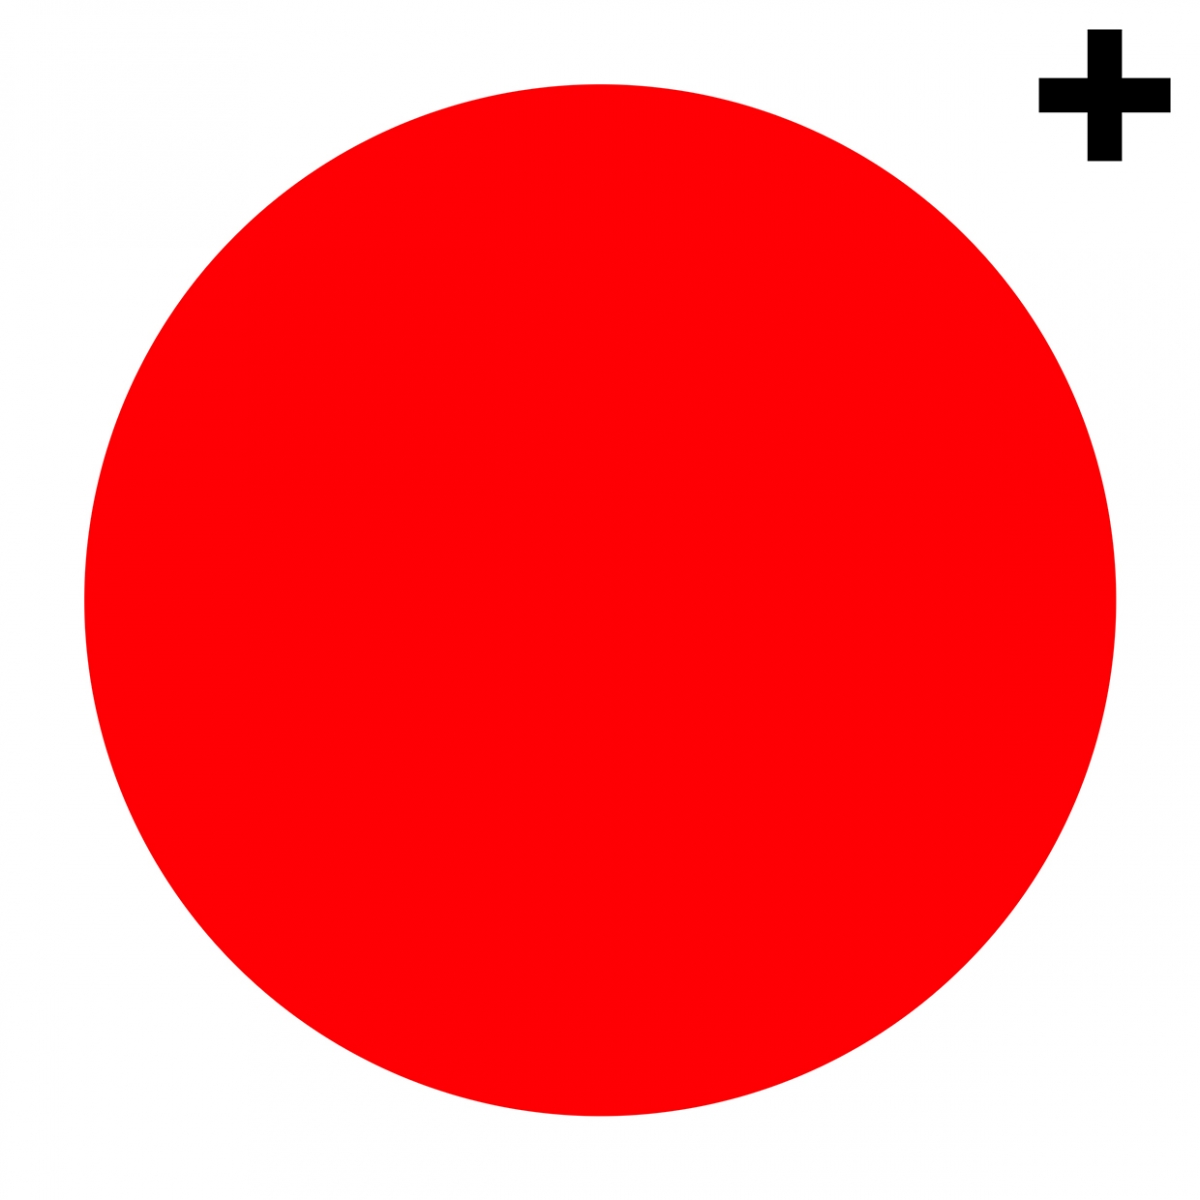 Imagen en la que se ve un círculo de color rojo